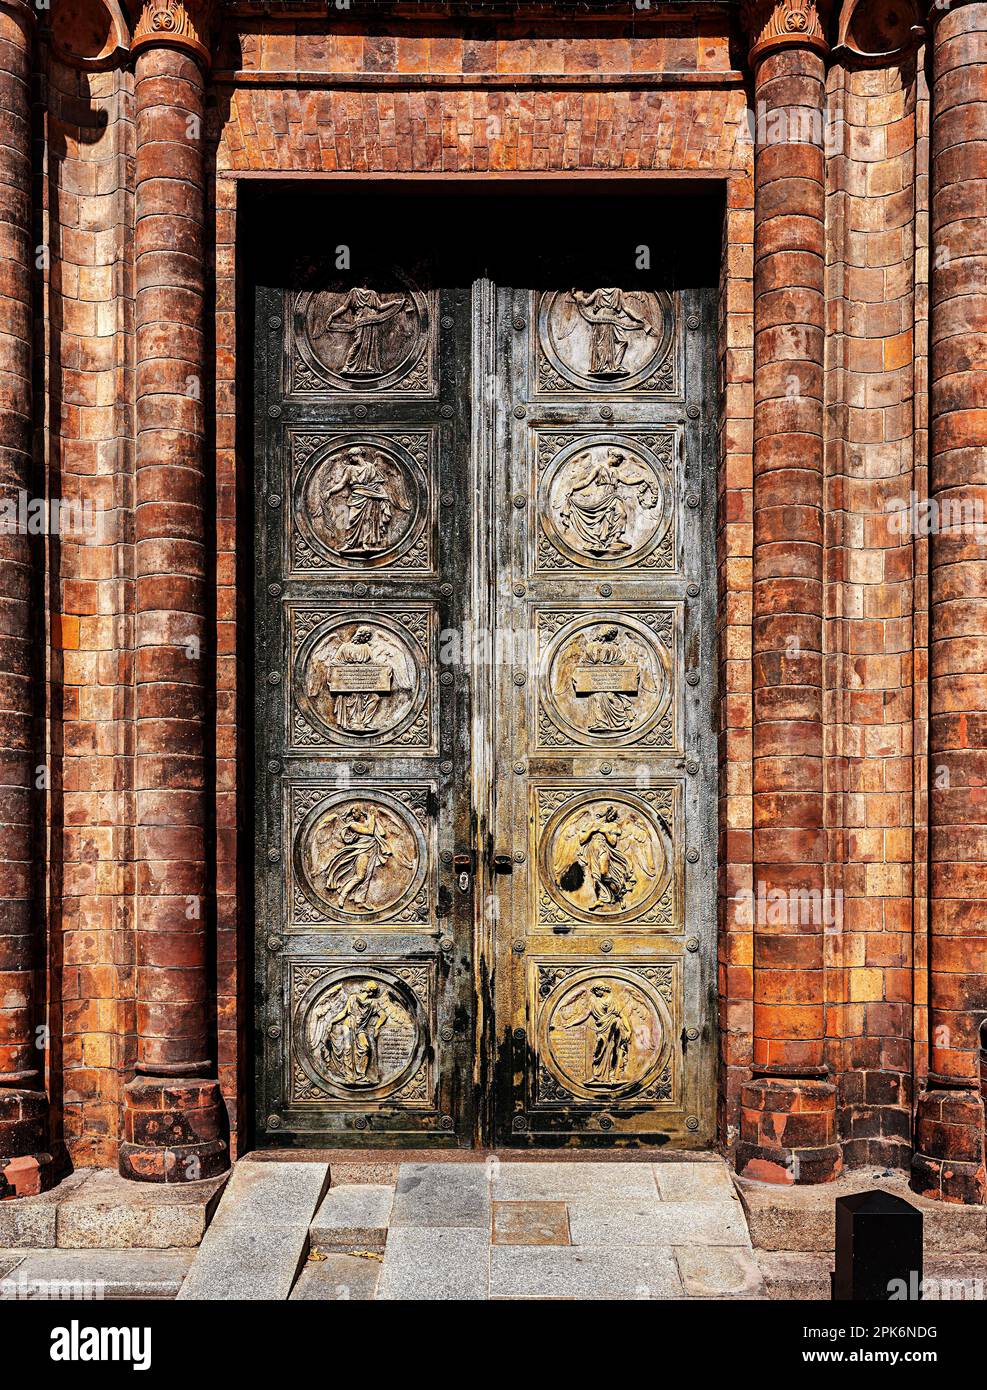 Portale con medaglioni a bassorilievo, Chiesa di Friedrichwerdersche, Werderscher Markt, Berlino, Germania Foto Stock